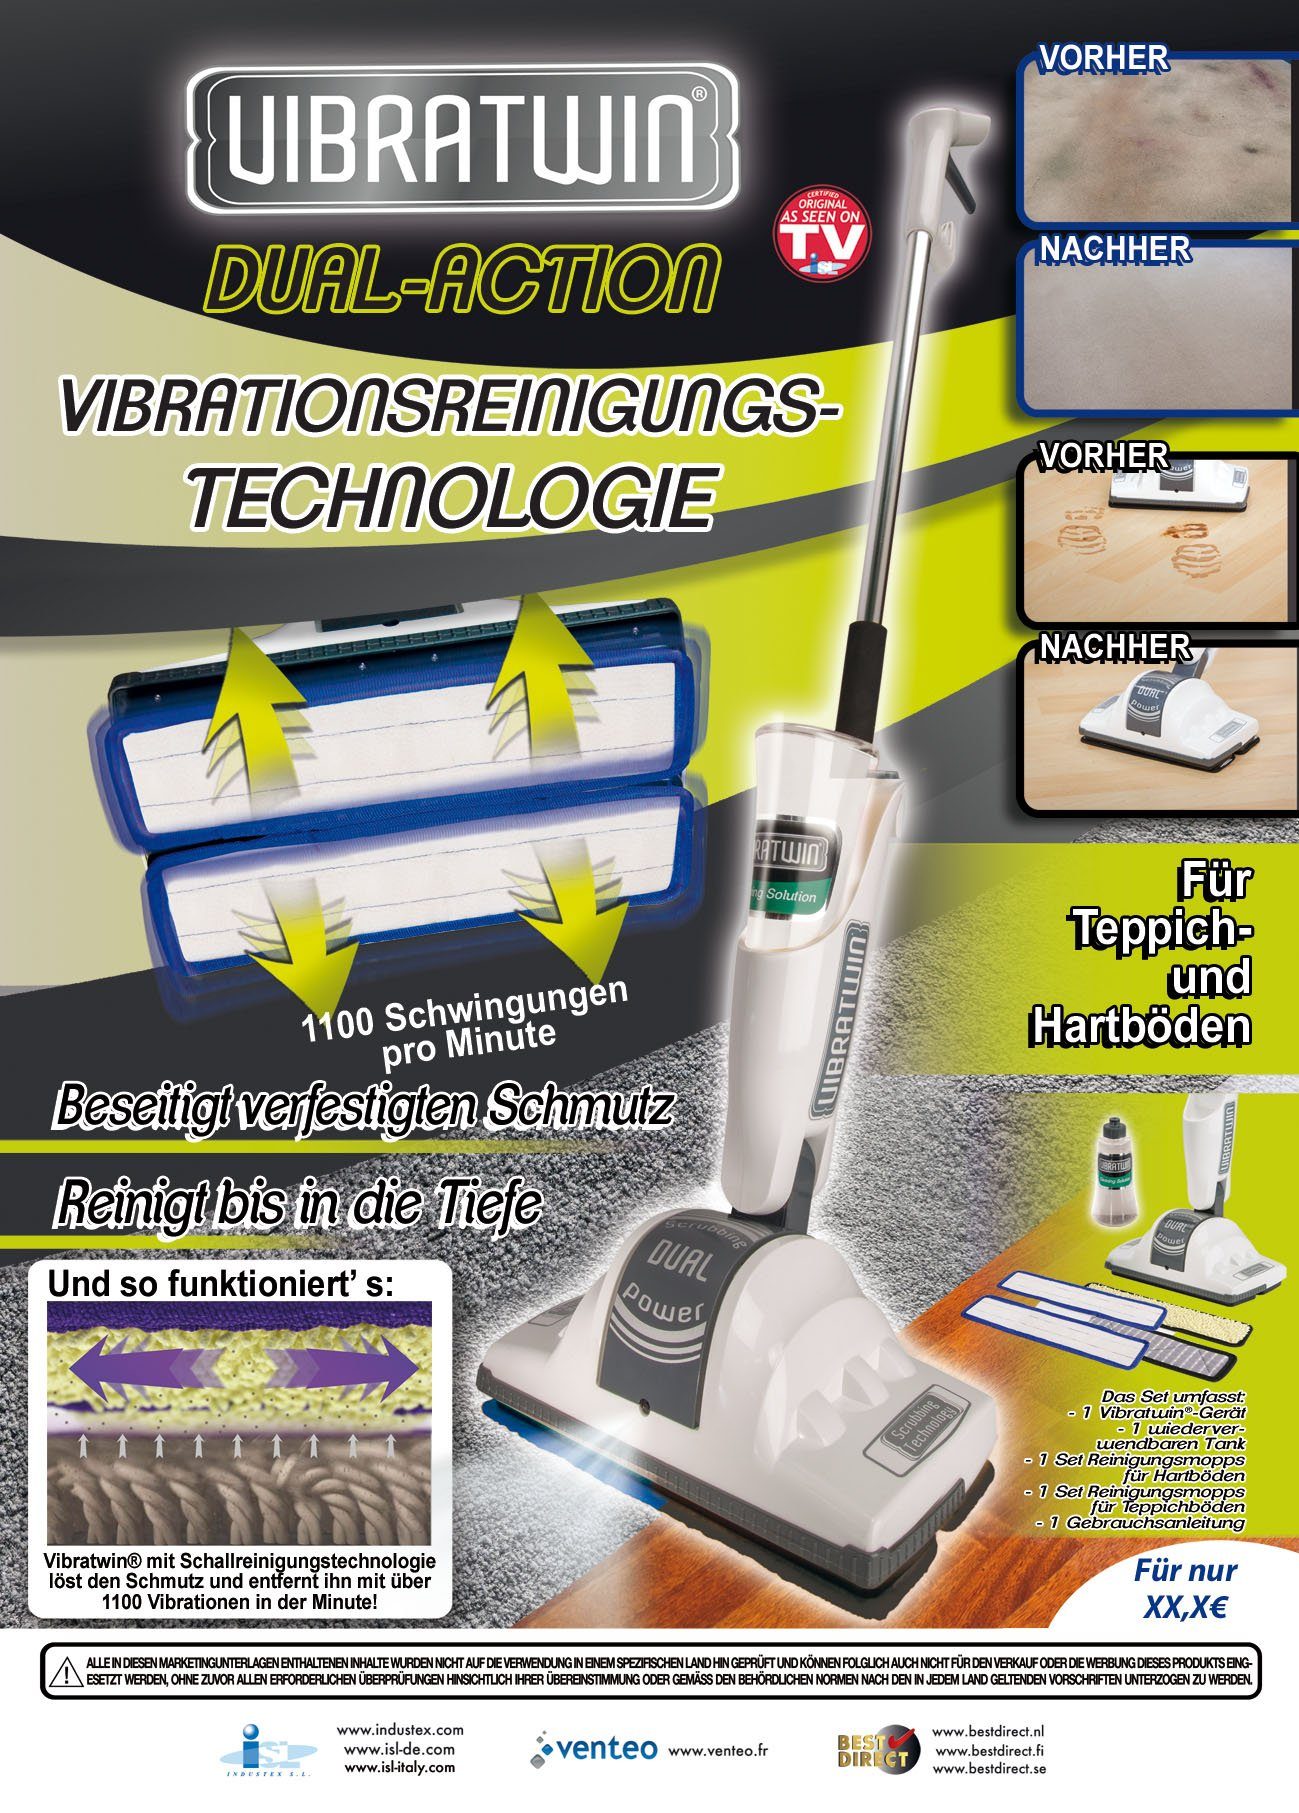 W, Poliermaschine Matten Direct® Elektrischer Bodenwischer Hartbodenreiniger - VibraTwin®, Best 40 beutellos, mit vibrierenden